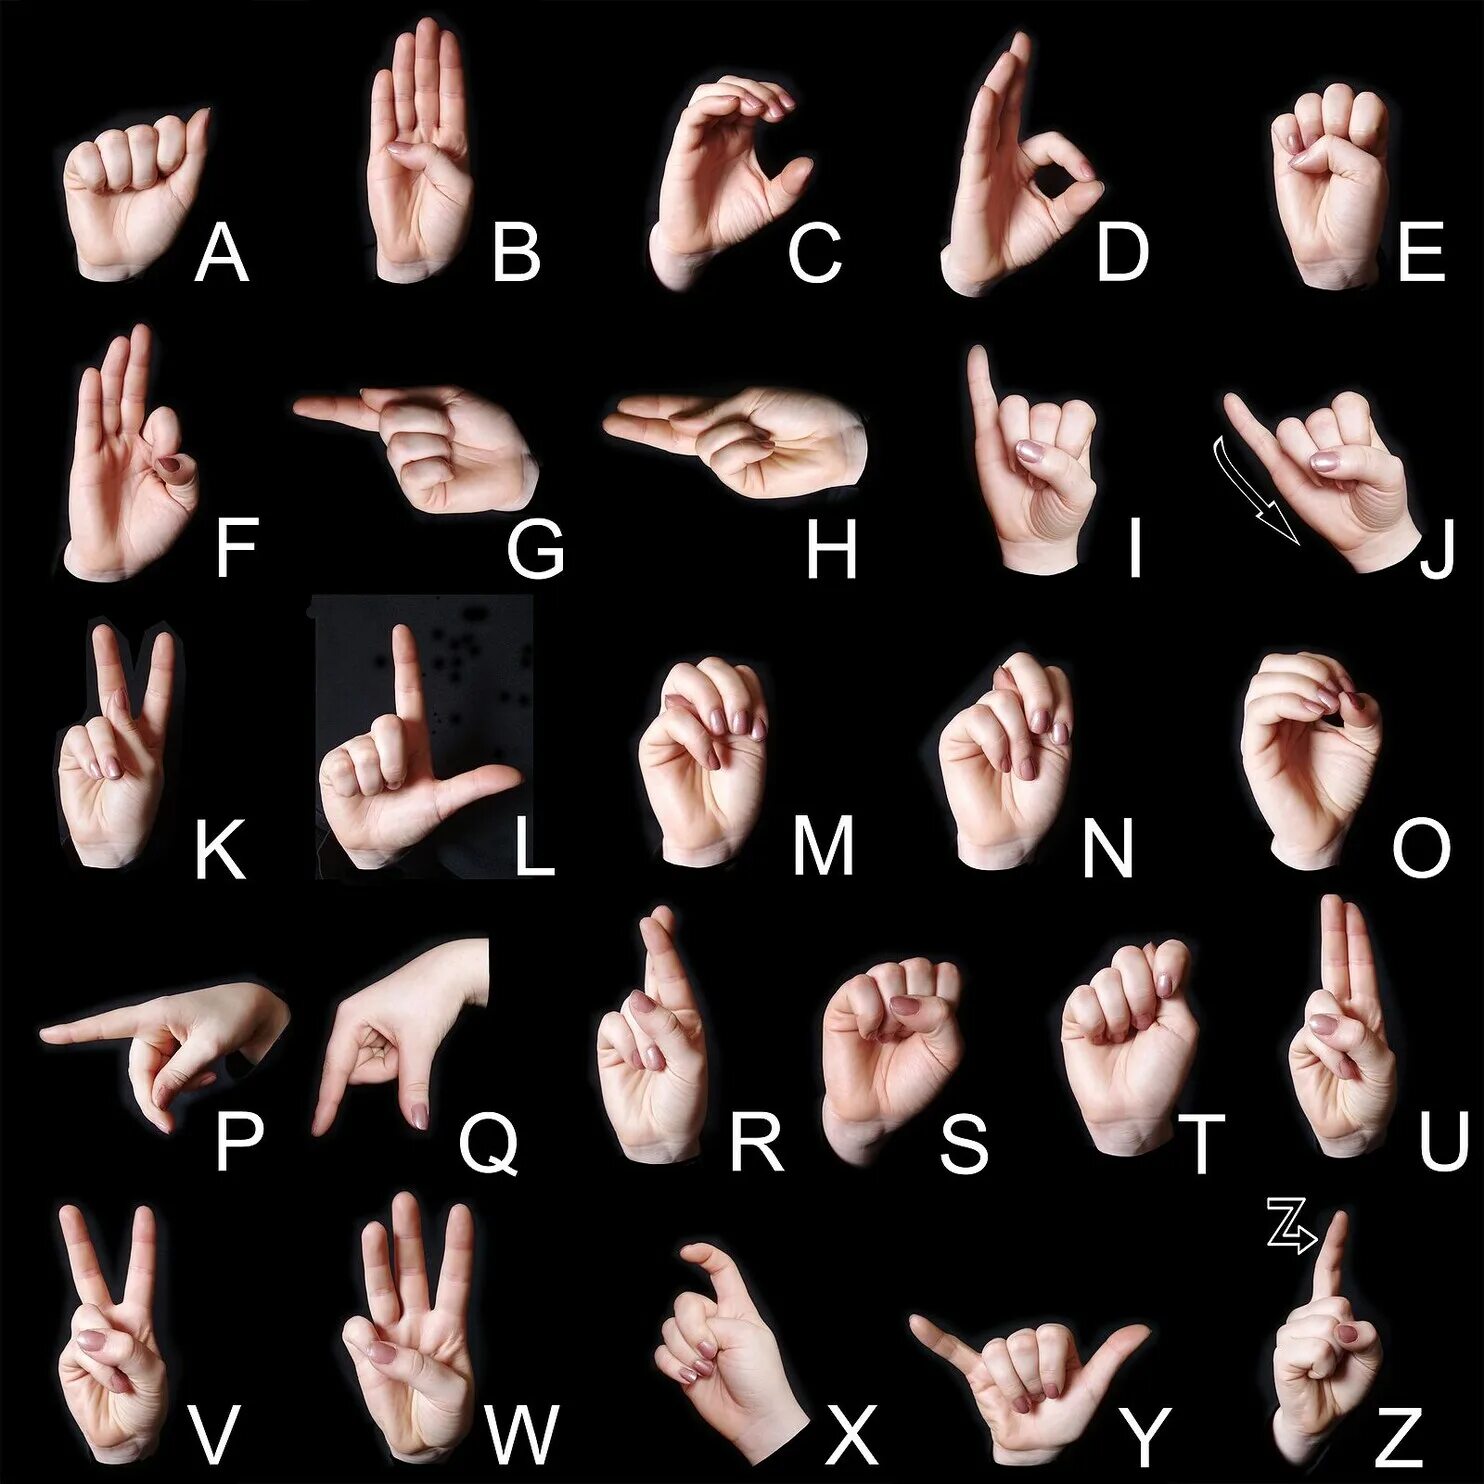 Ам язык. Дактильная Азбука глухих жесты. Алфавит английский жестовый язык. Английский язык жестов глухонемых. Английский алфавит для глухих.